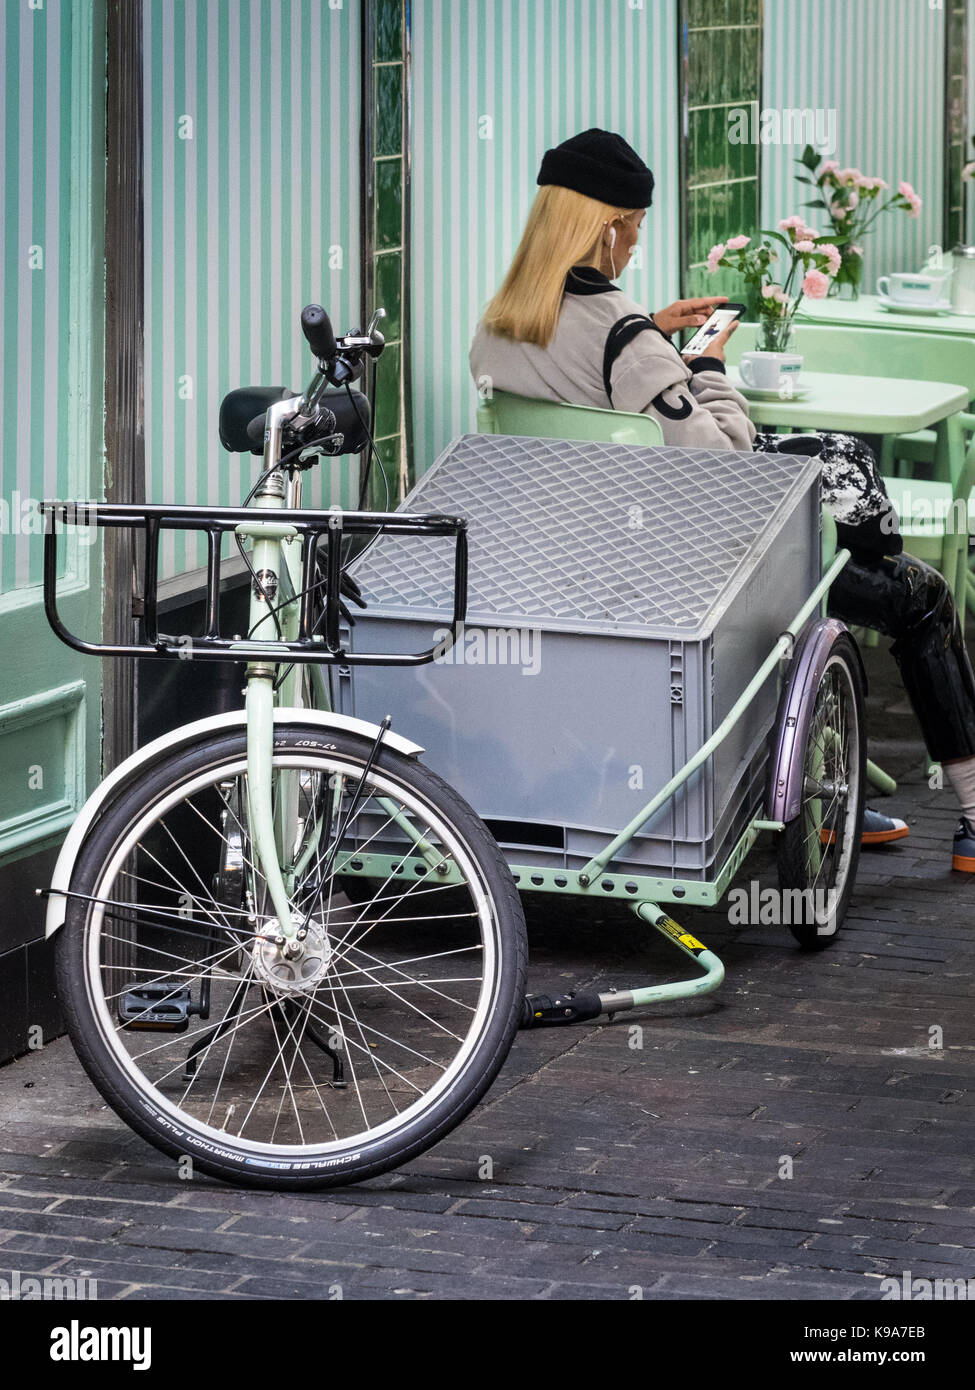 Lieferung Cargo Bike London - Außerhalb eines Delikatessen cafe in Londons Soho Entertainment District geparkt Stockfoto